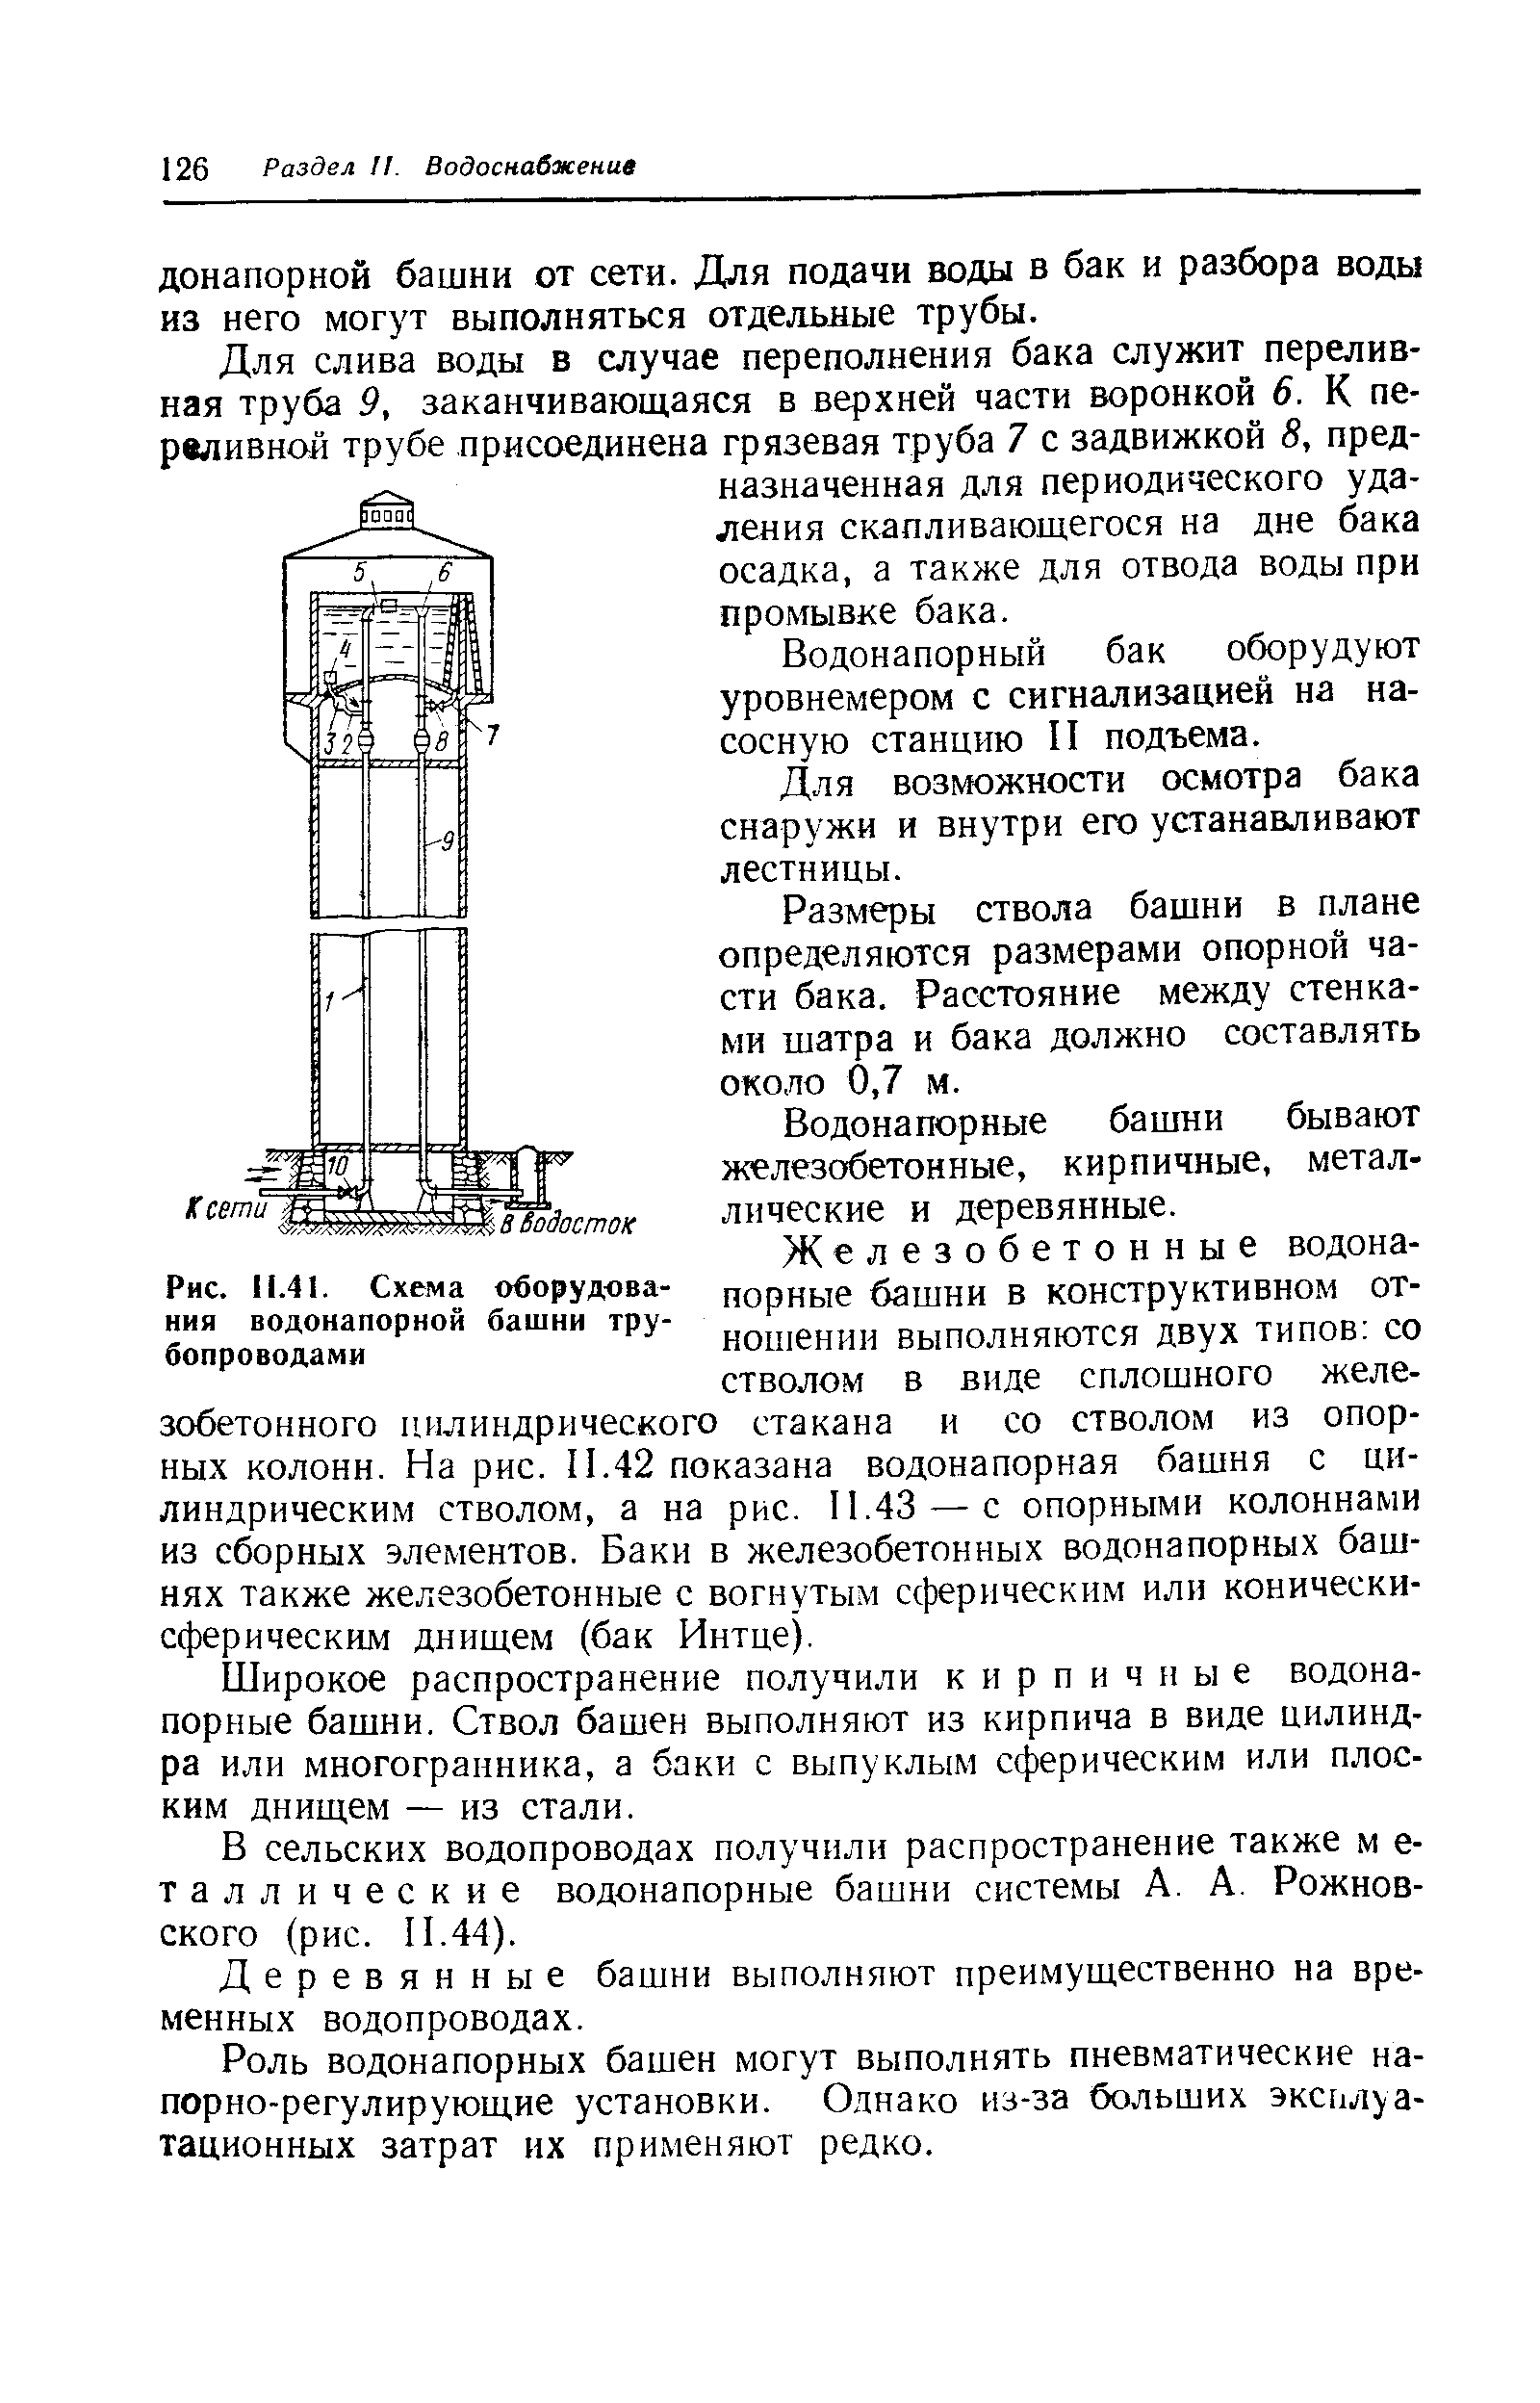 Рис. 11.41. Схема оборудования водонапорной башни трубопроводами
